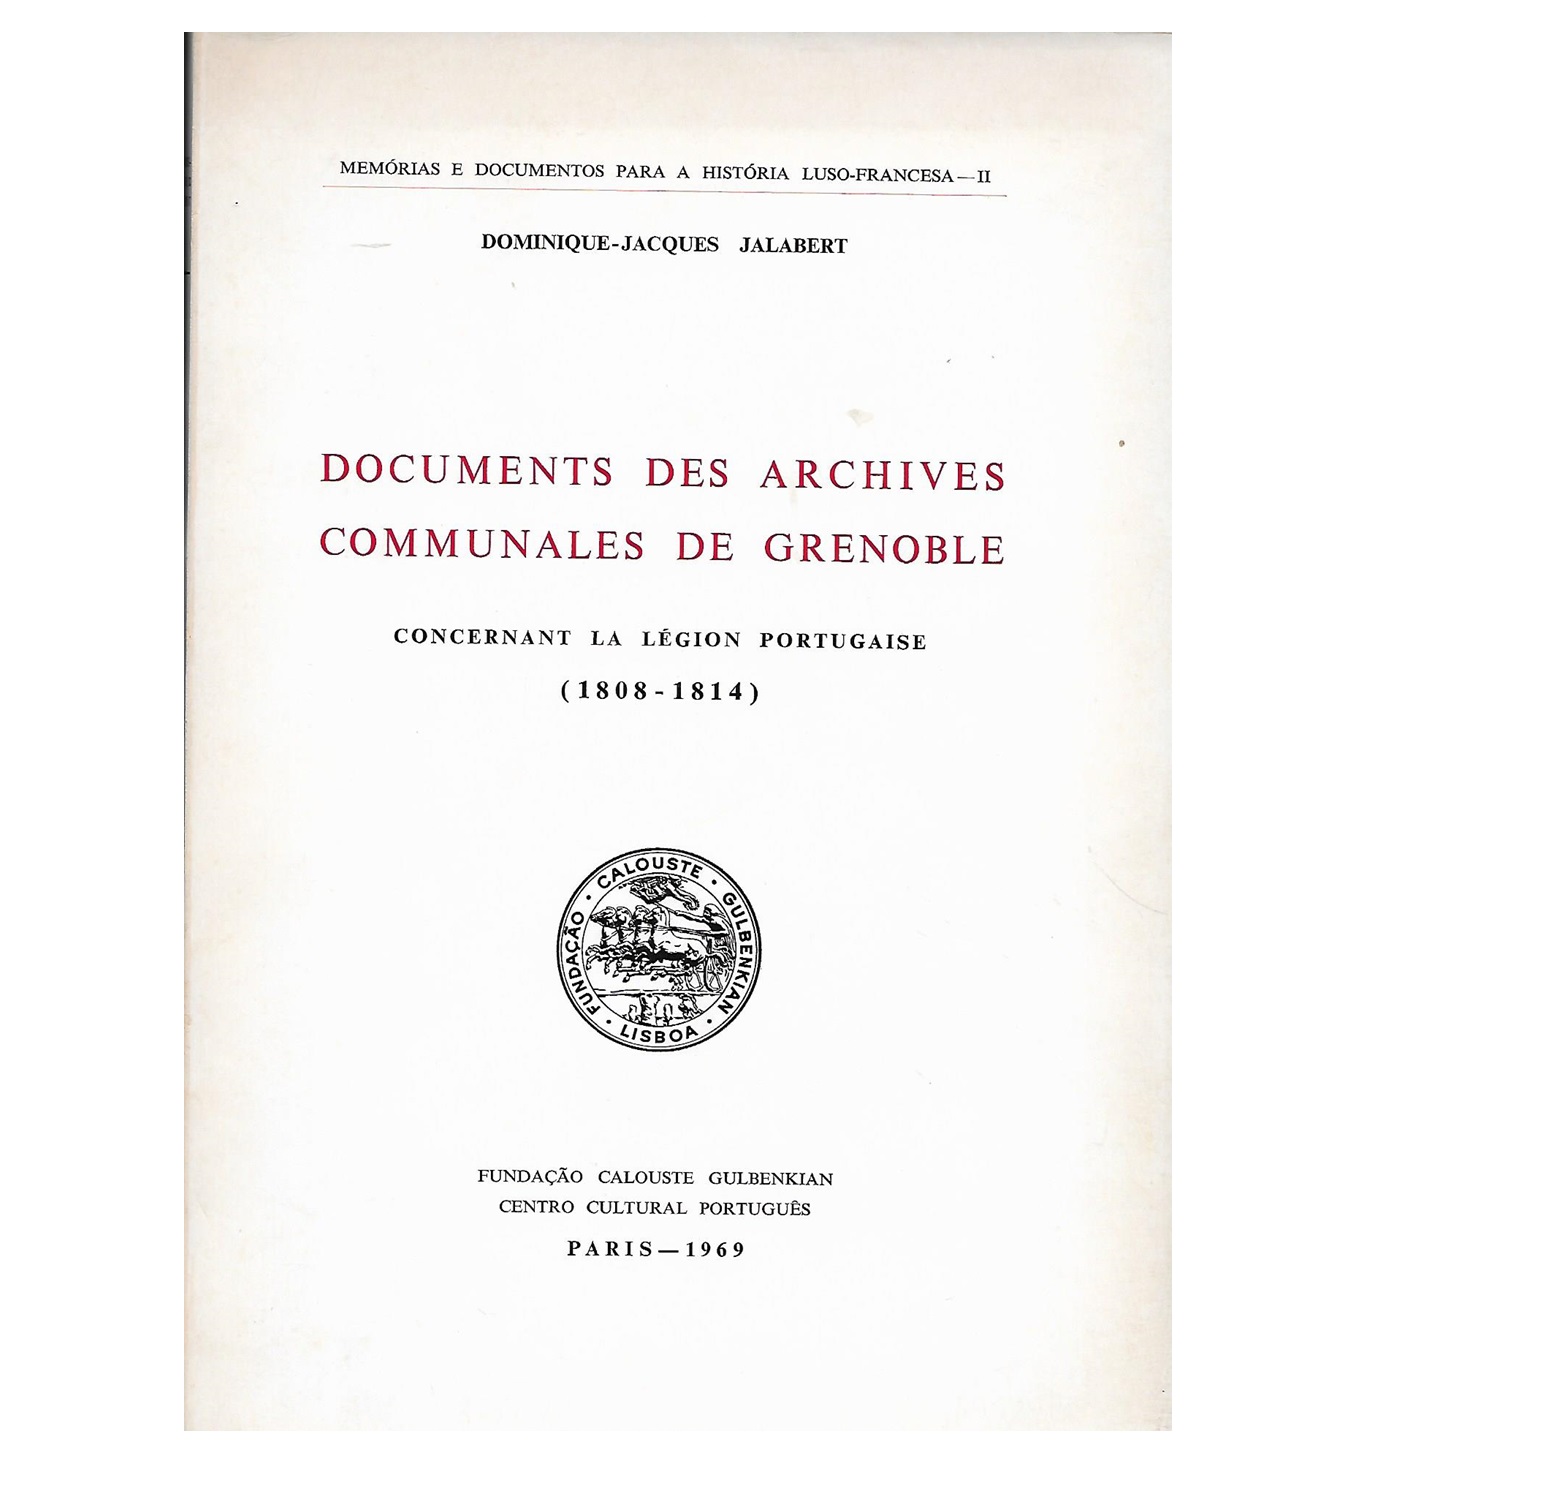  DOCUMENTS DES ARCHIVES COMMUNALES DE GRENOBLE: CONCERNANT LA LÉGION PORTUGAISE (1808-1814)